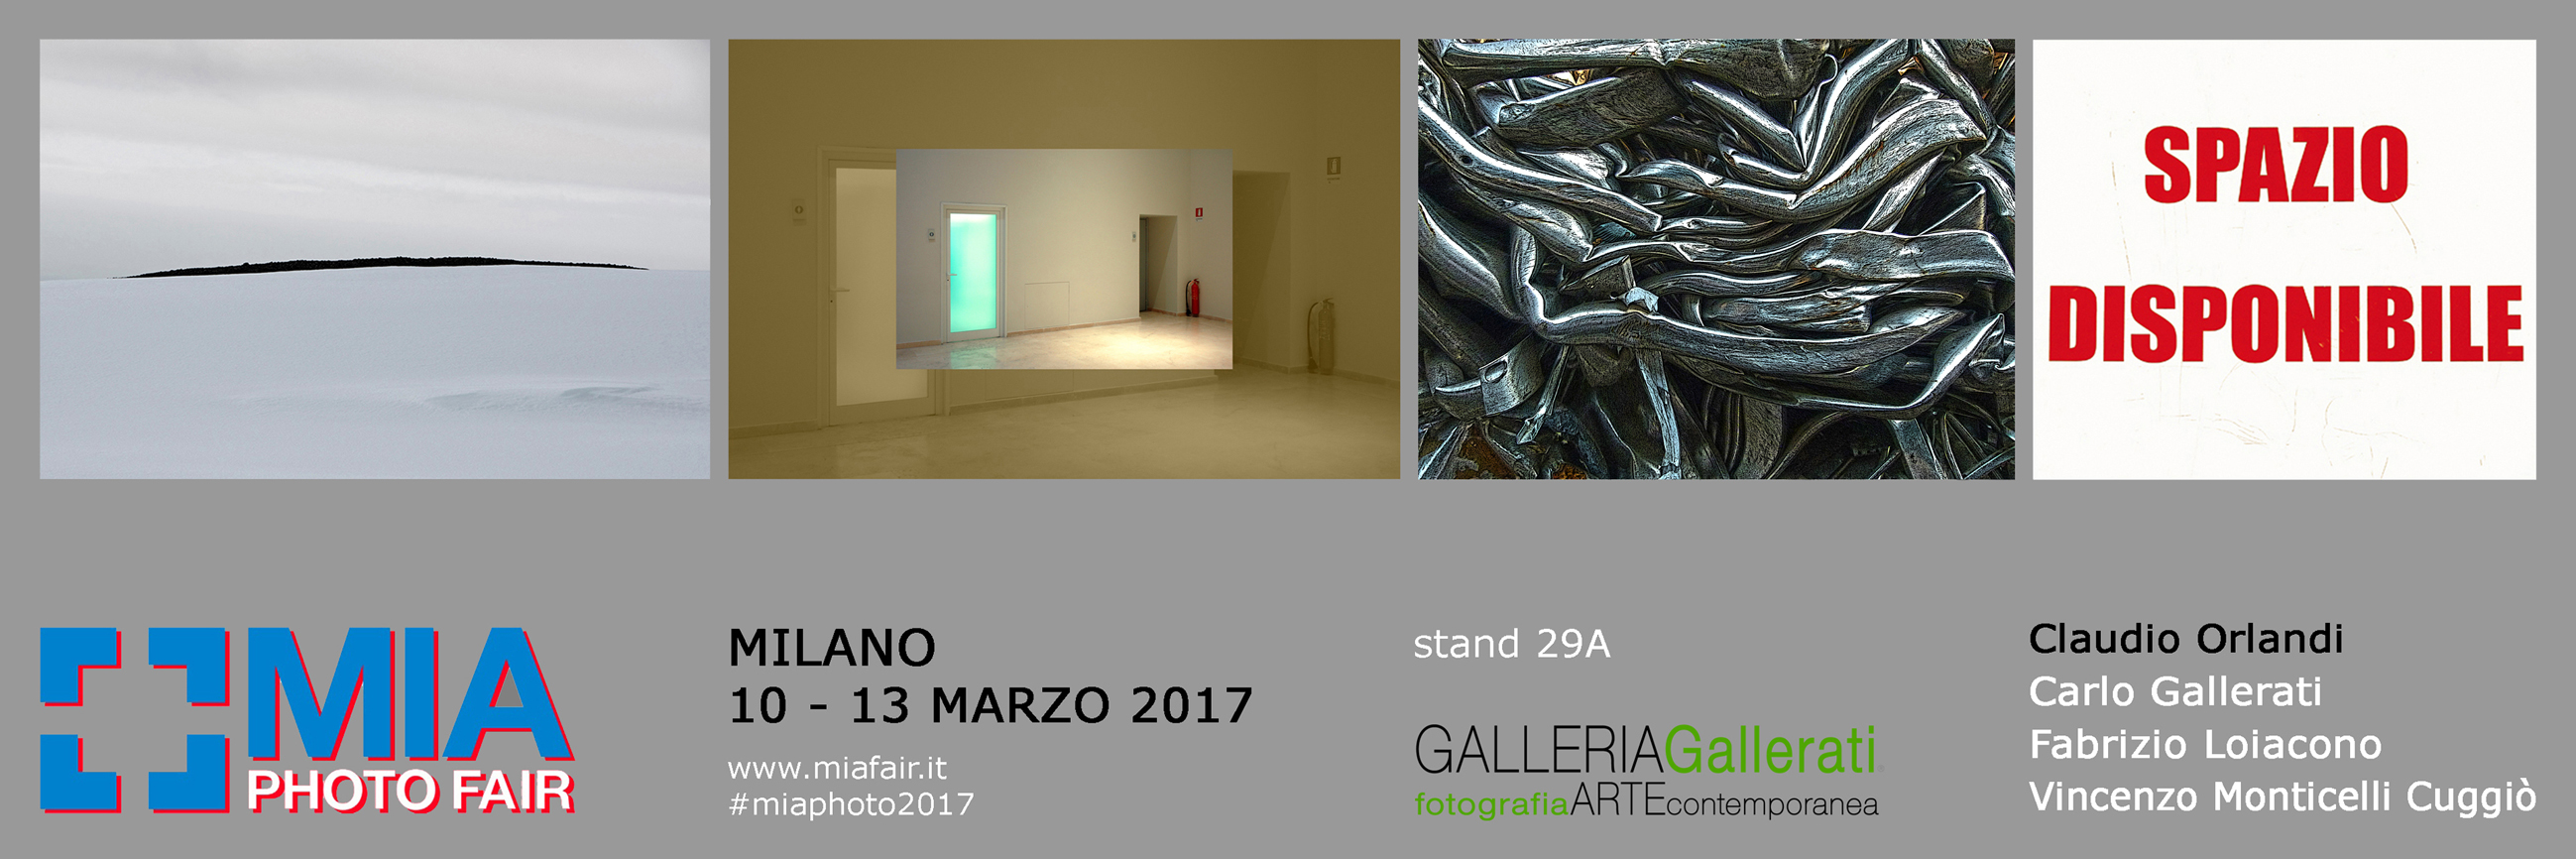 MIA 2017_INVITO_Galleria Gallerati